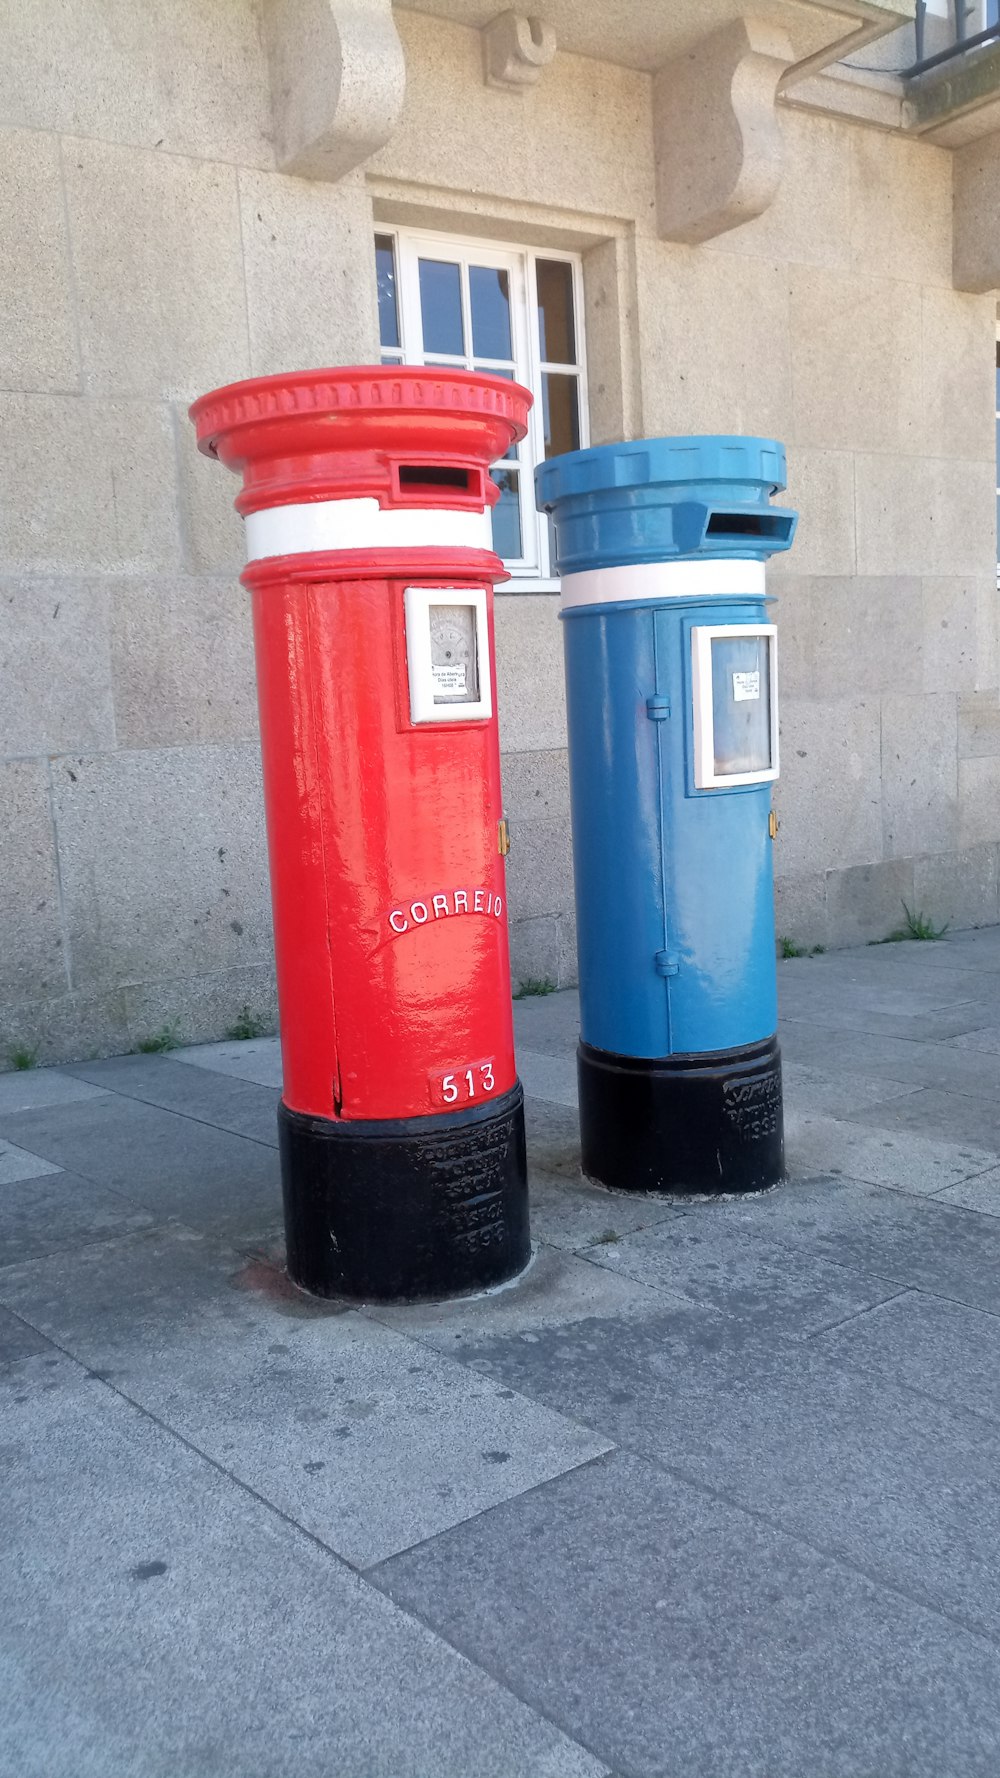 길가에 놓인 빨간색과 파란색 우편함 두 개